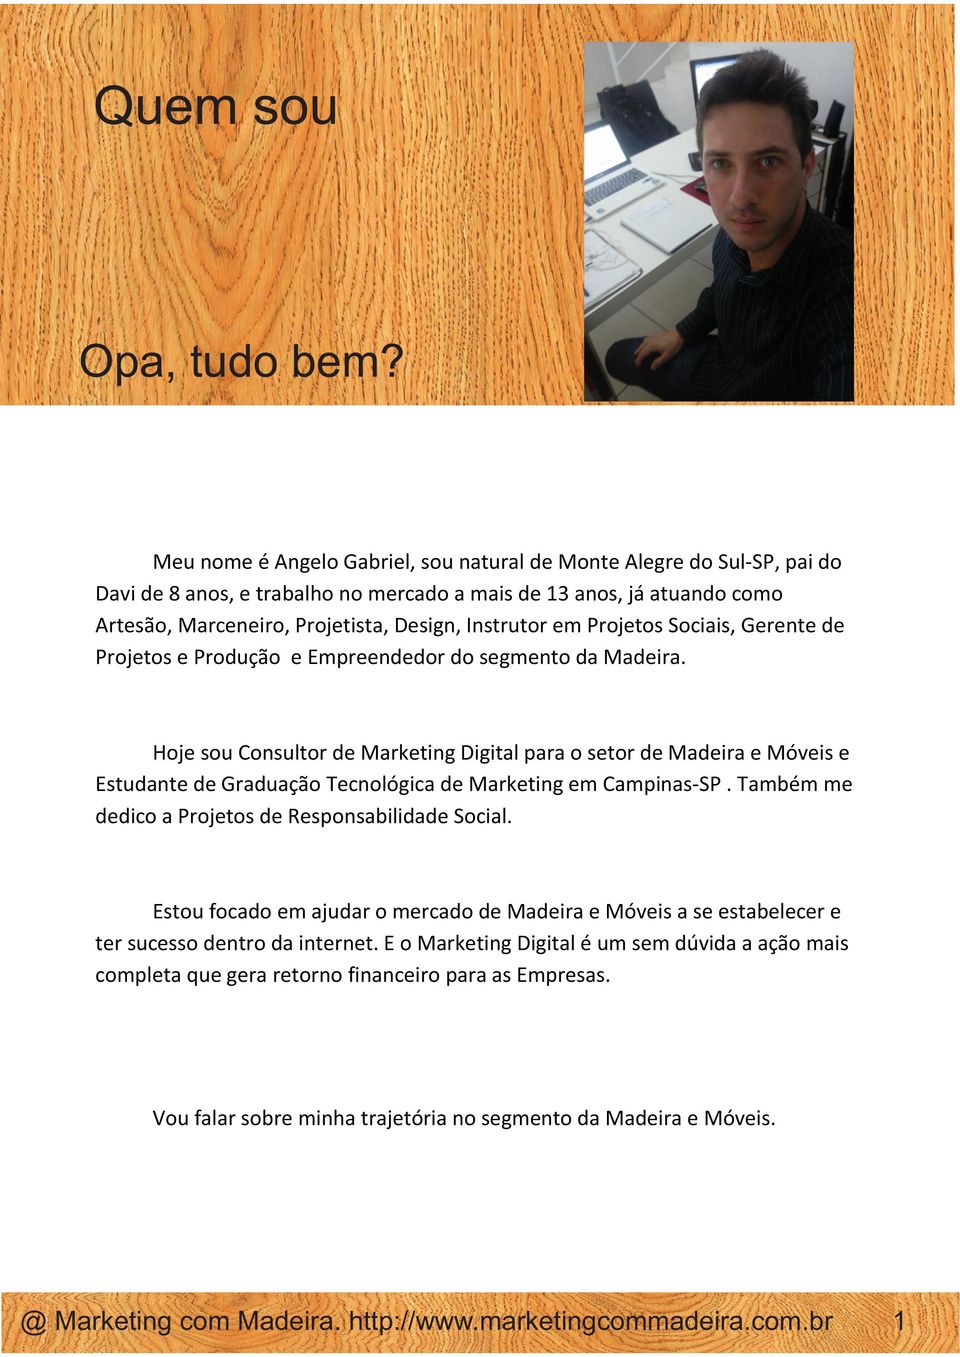 Instrutor em Projetos Sociais, Gerente de Projetos e Produção e Empreendedor do segmento da Madeira.